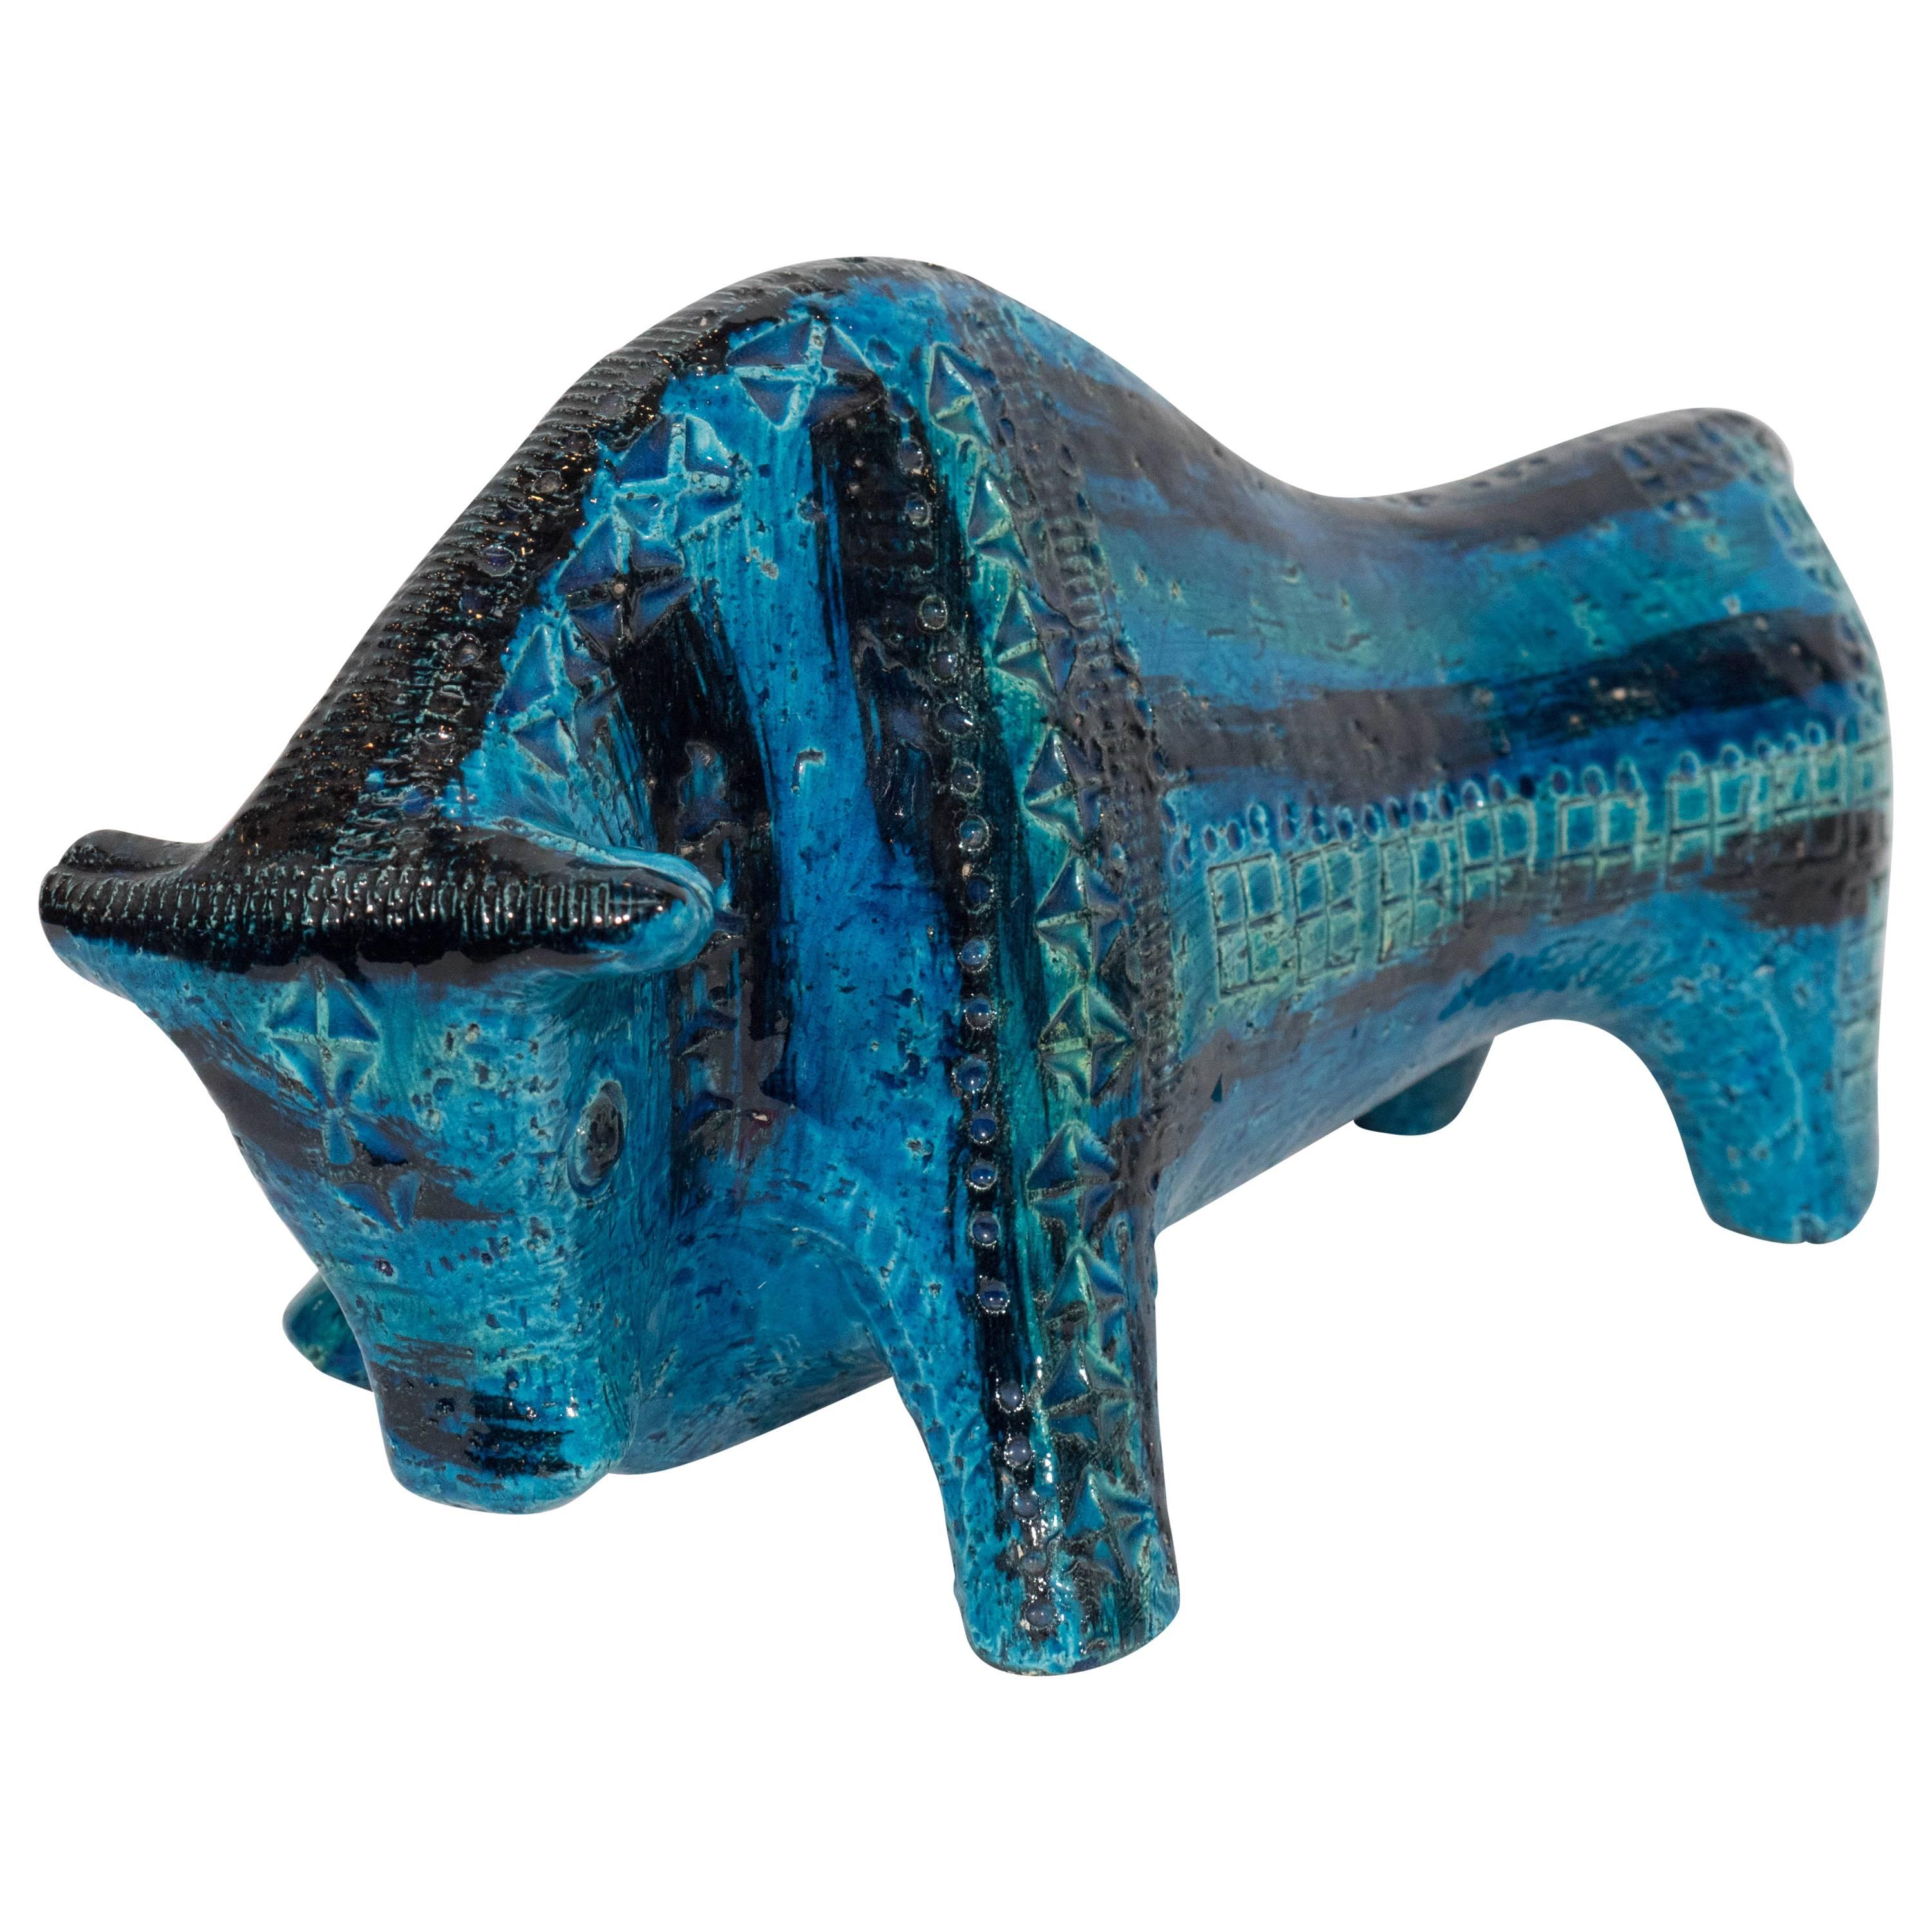 Rimini Blue Bull Sculpture by Bitossi for Raymor